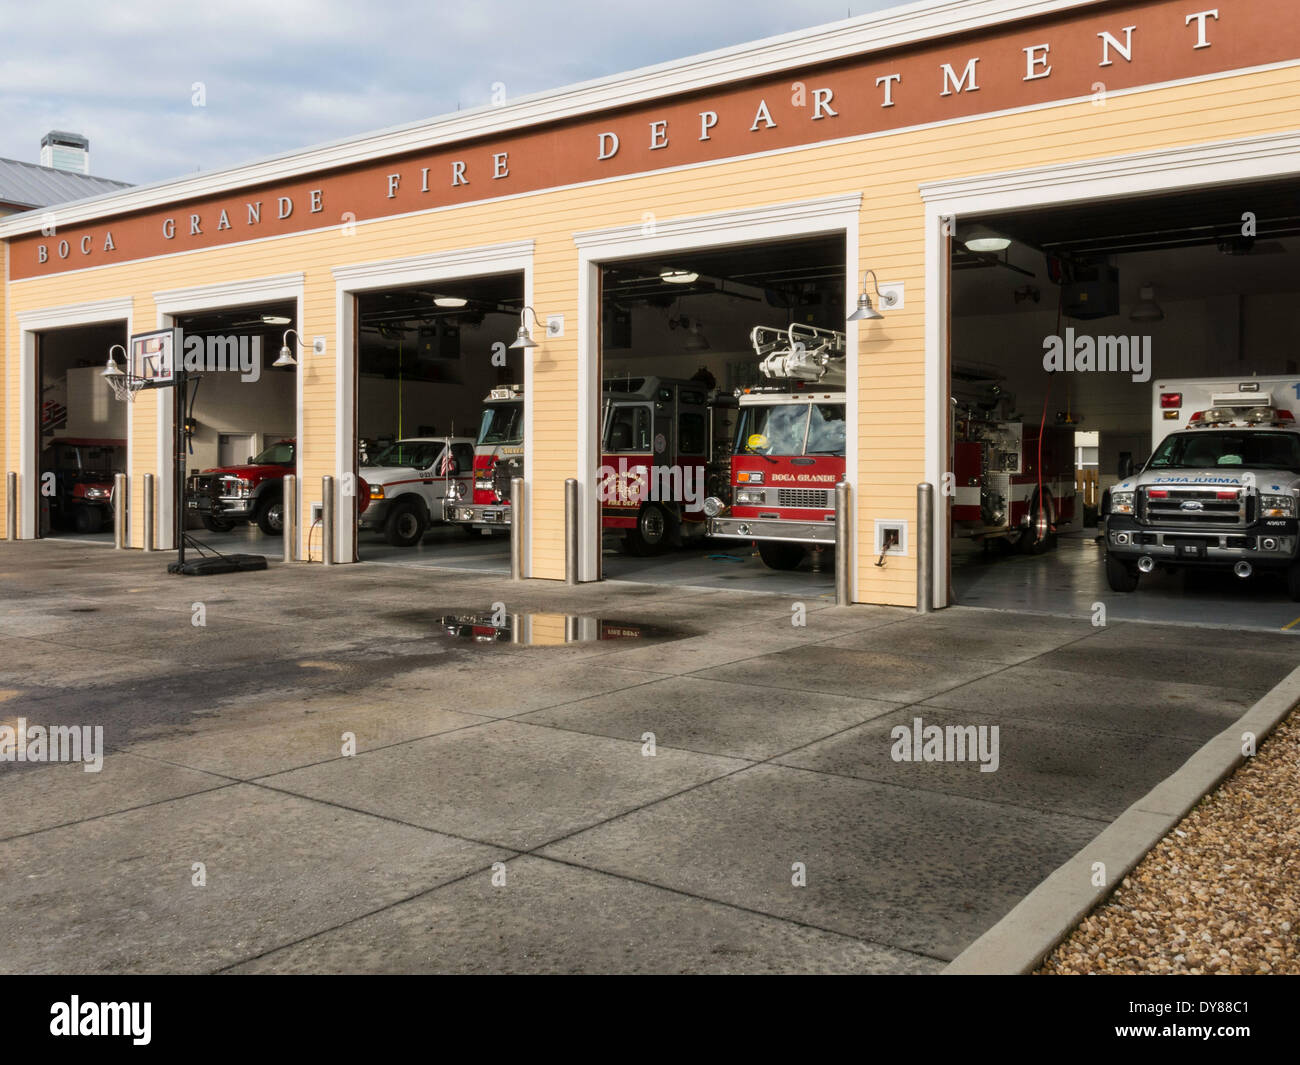 Fire Station with Truck Bays Open, Boca Grande, Gasparilla Island, FL,USA Stock Photo